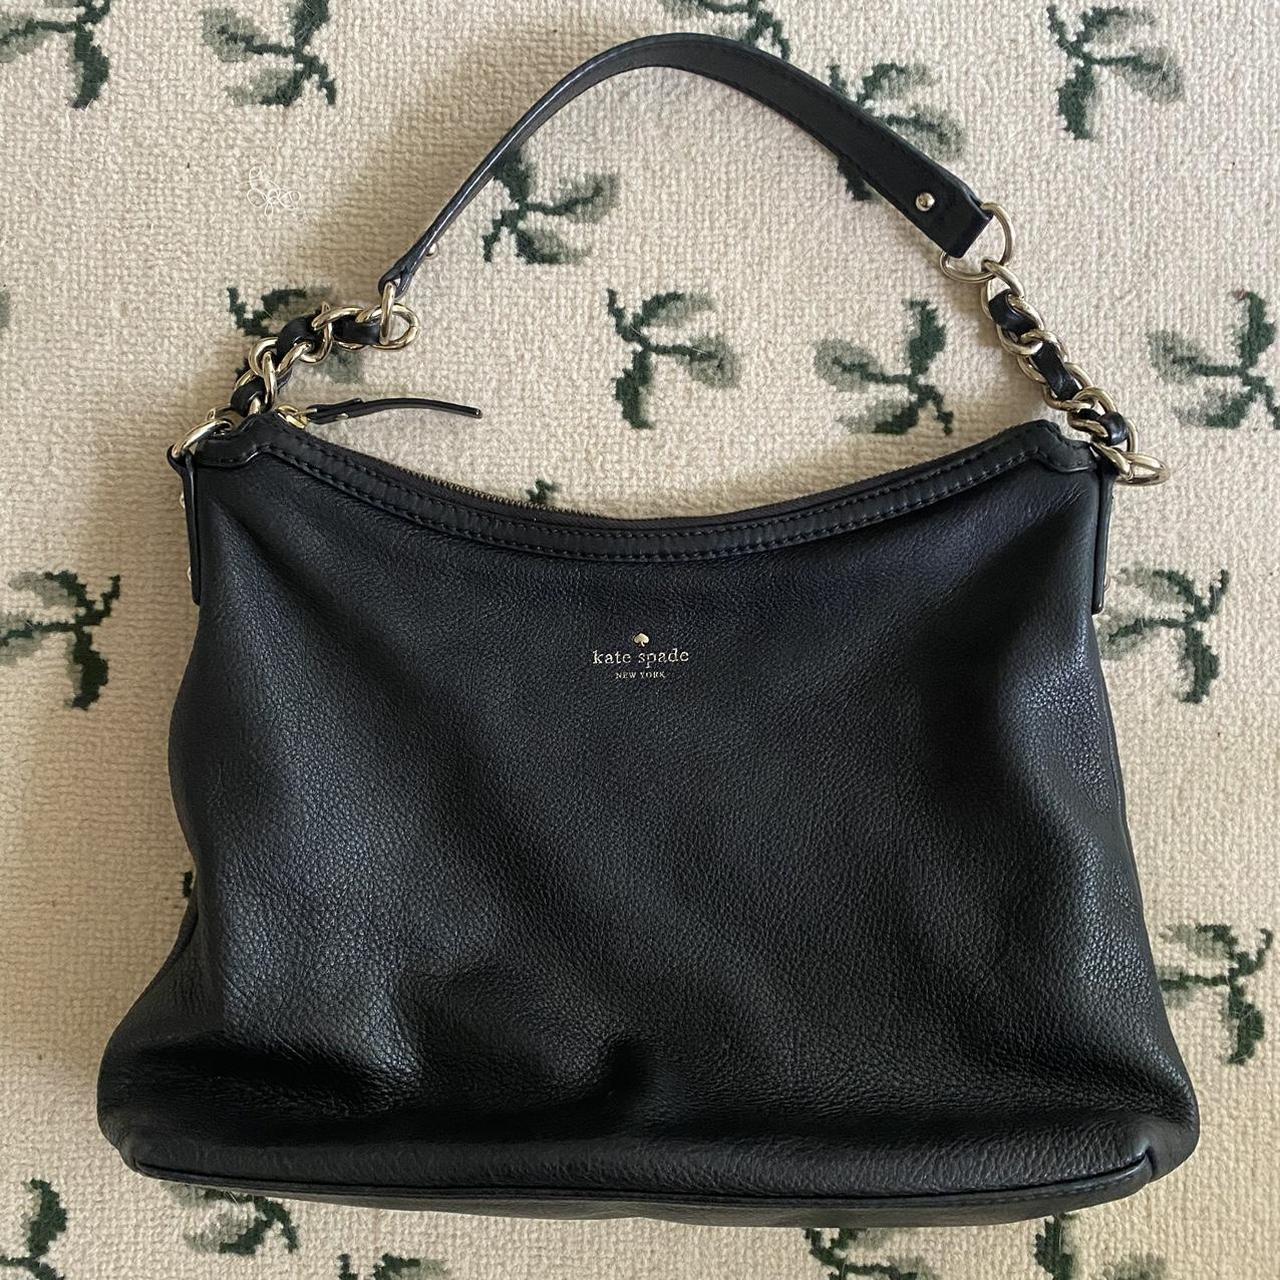 Kate Spade Leather Hobo Bag in Black